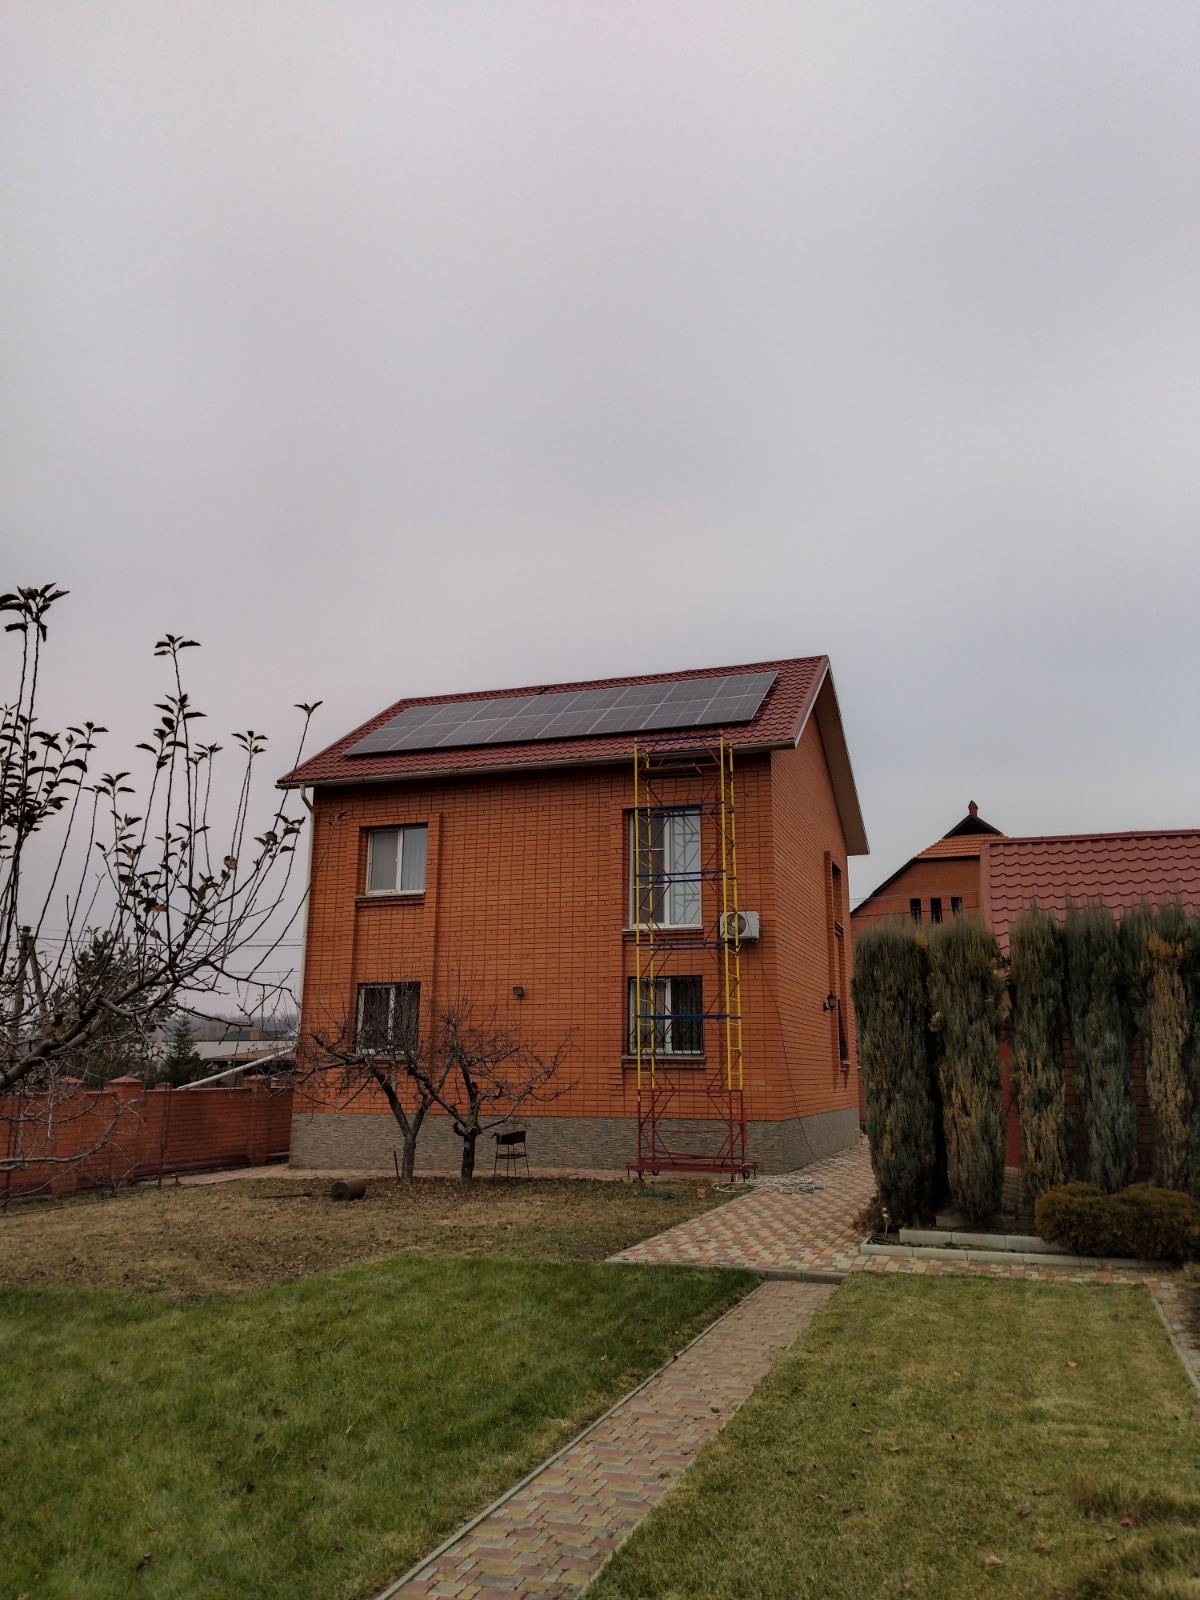 Гибридная СЭС мощностью 5 кВт в селе Новоалександровка Запорожской области | Green System